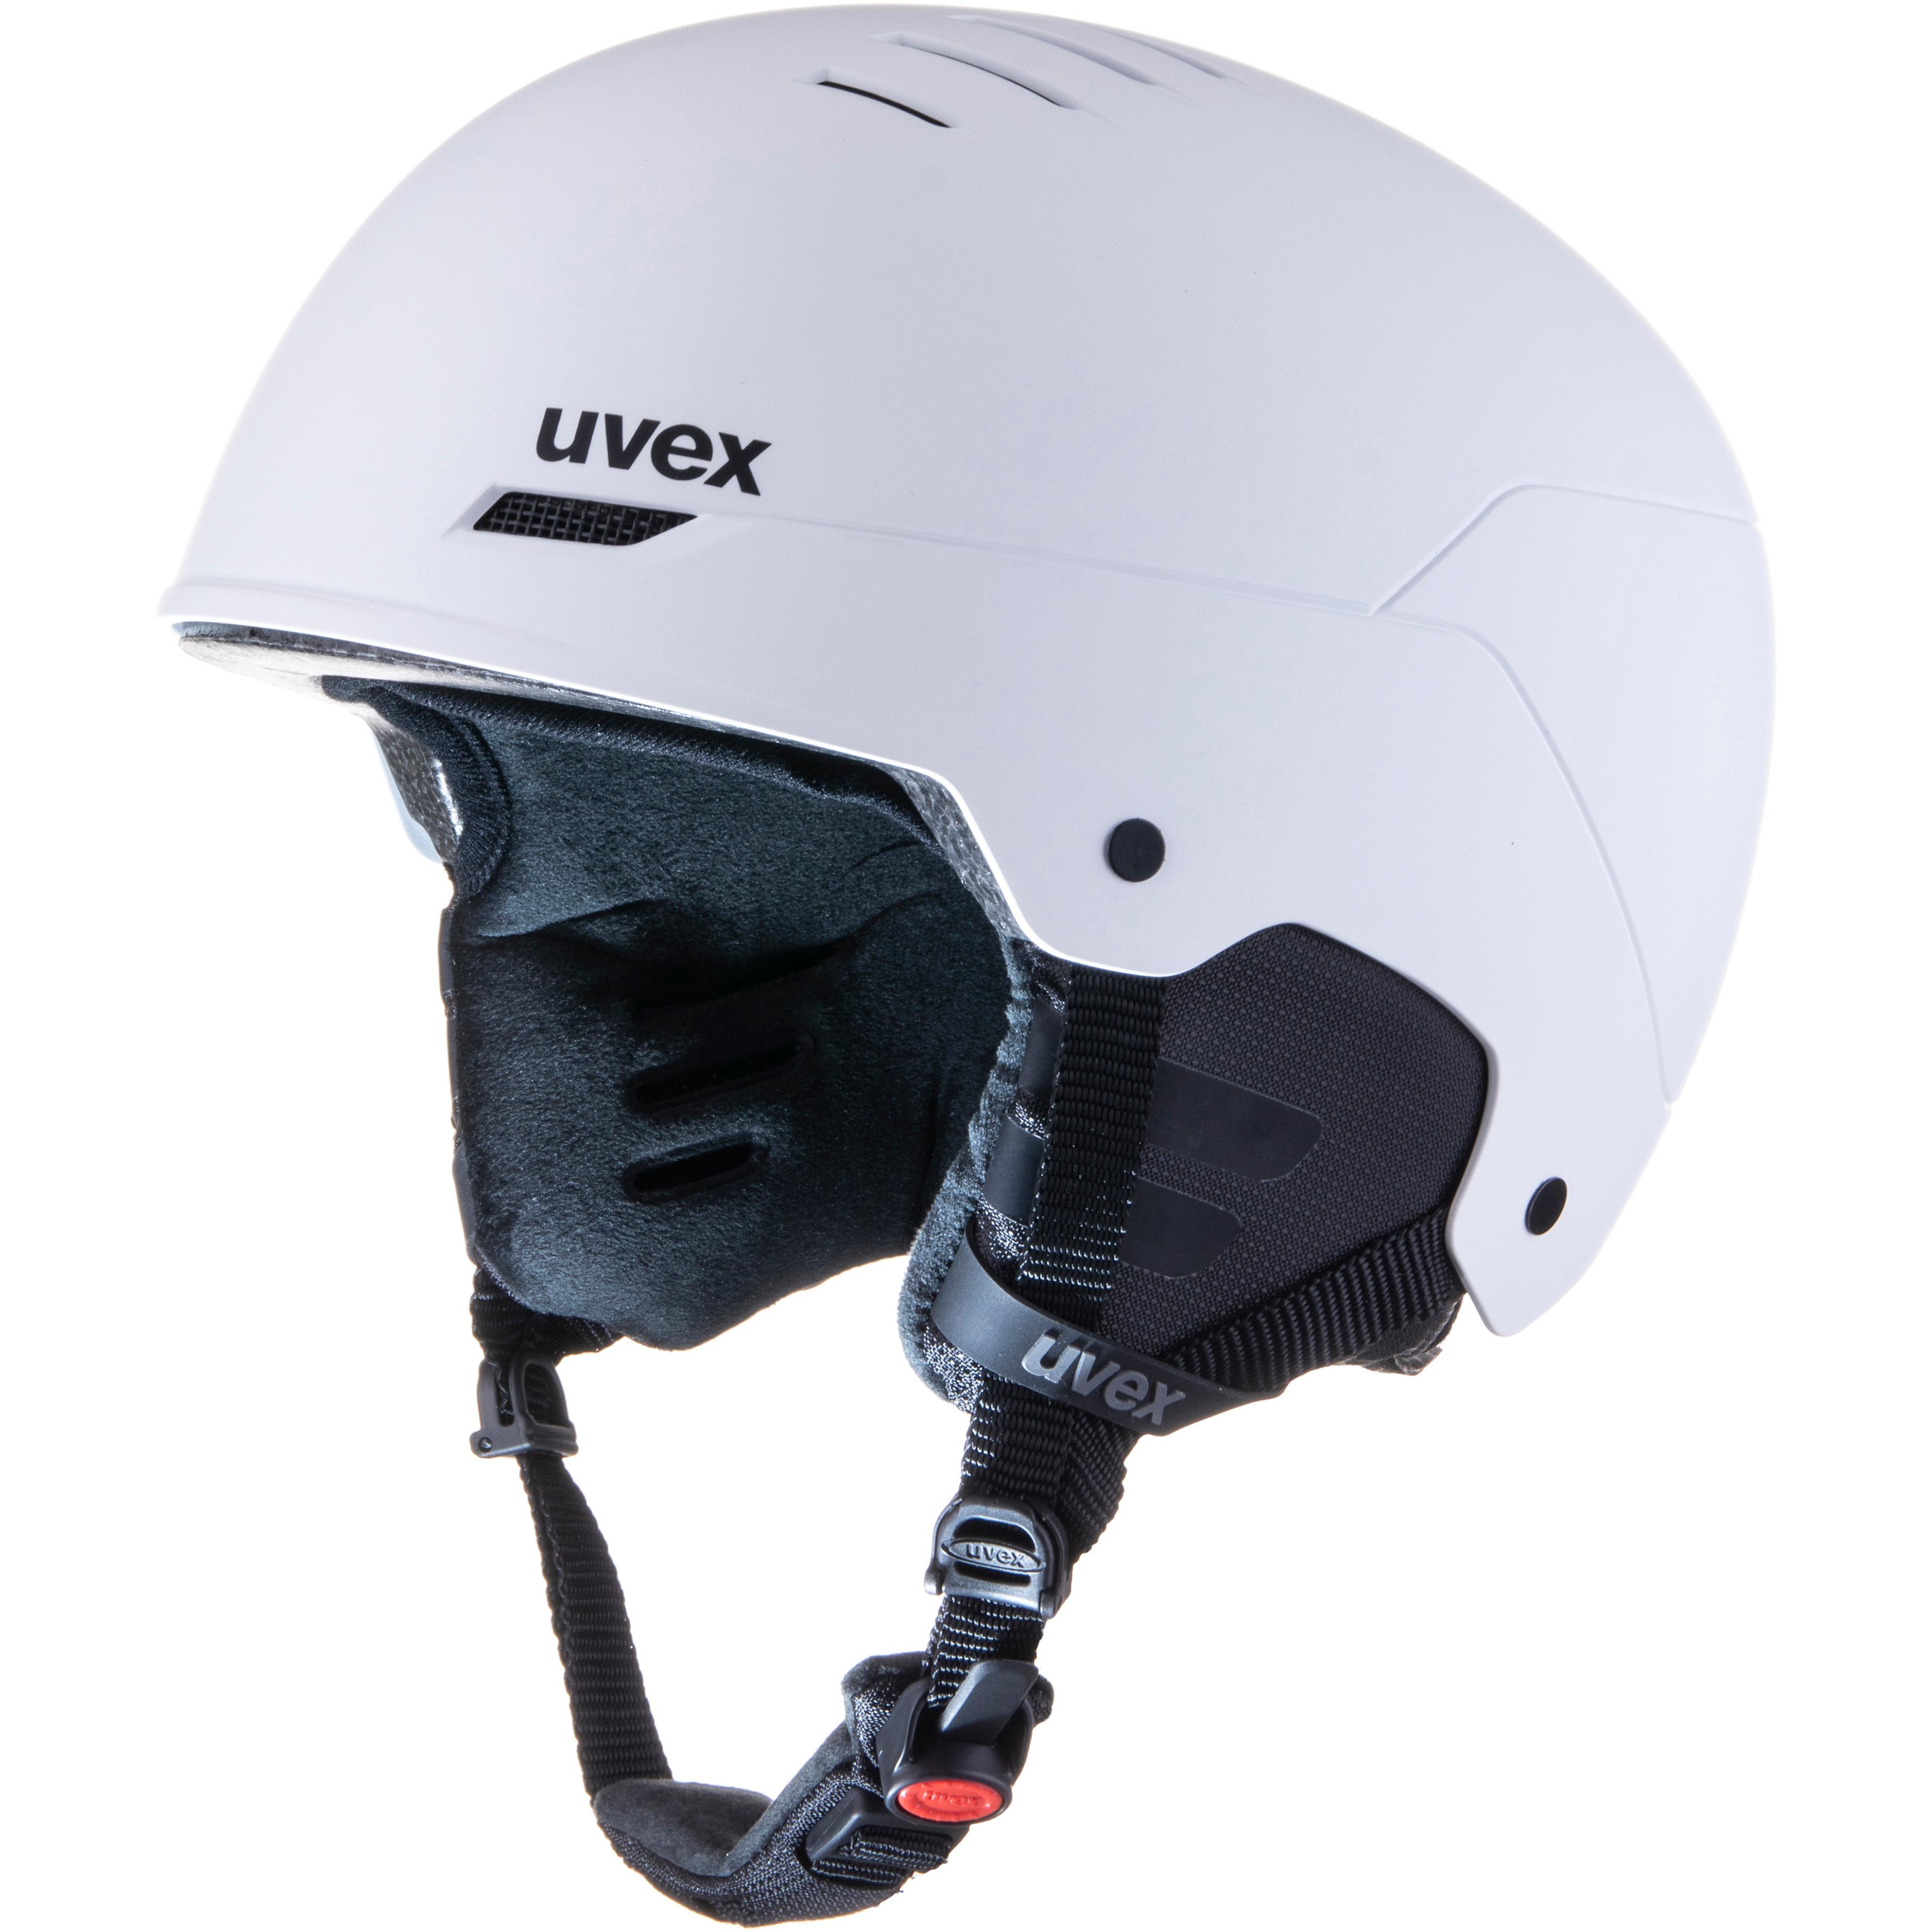 Uennm 30L Abschließbar Helmtasche, Große Helmtasche für Skihelm